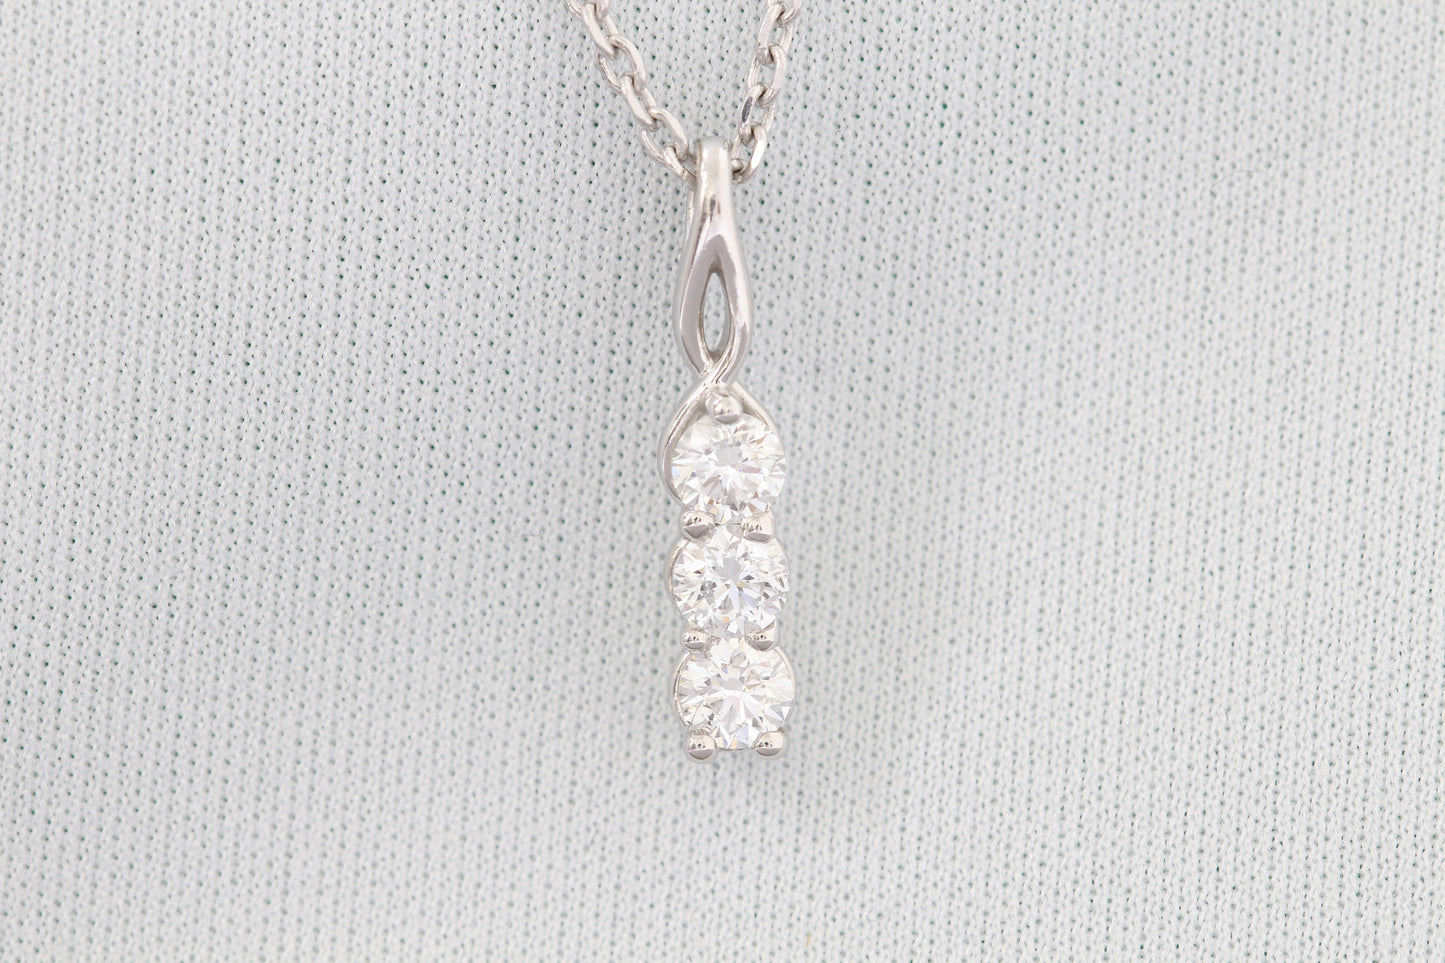 14k three stone diamond necklace